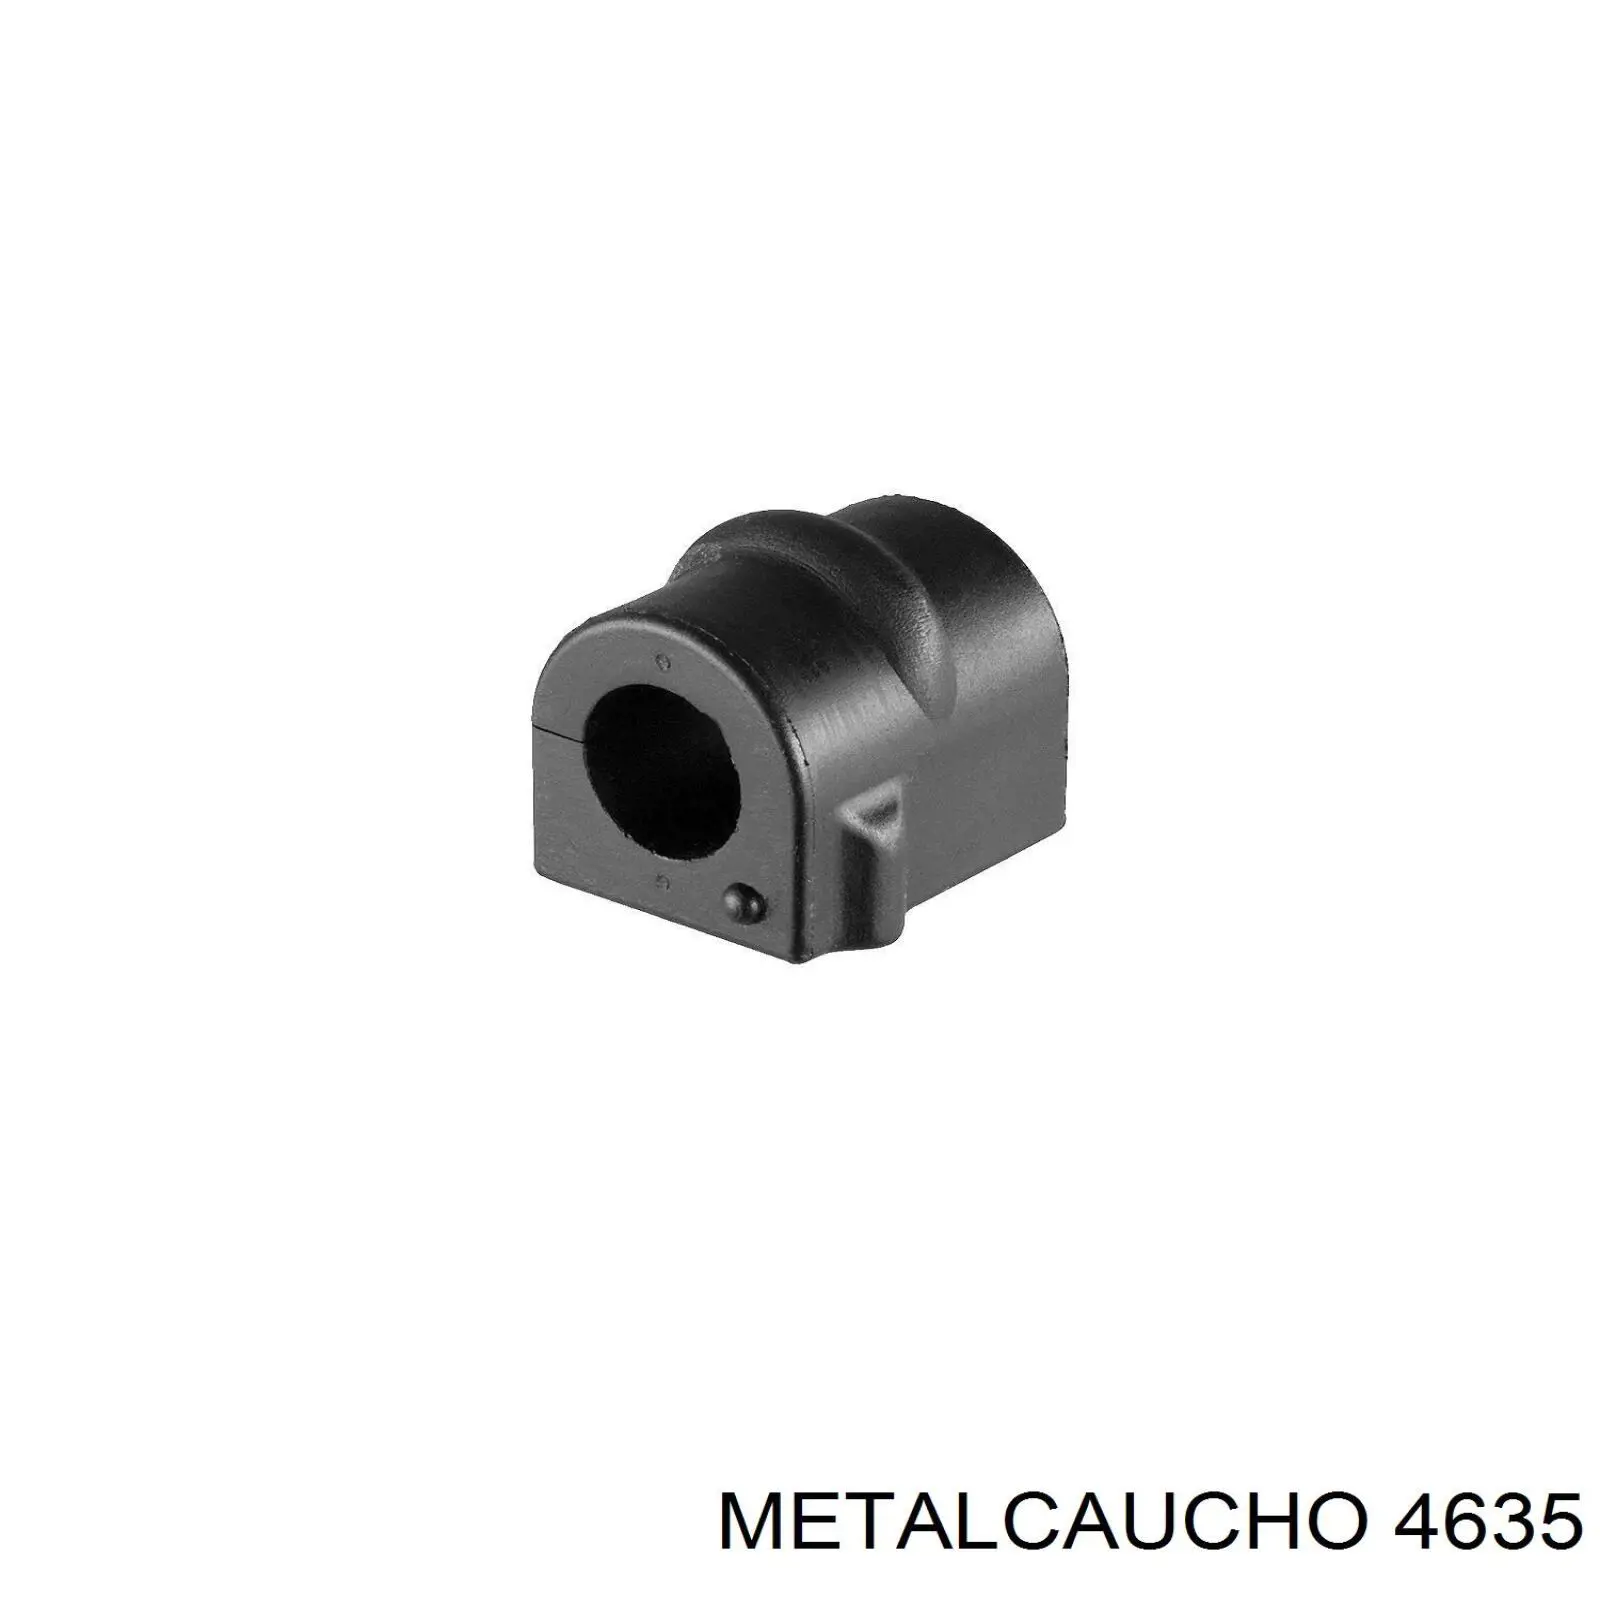 4635 Metalcaucho silentblock de suspensión delantero inferior